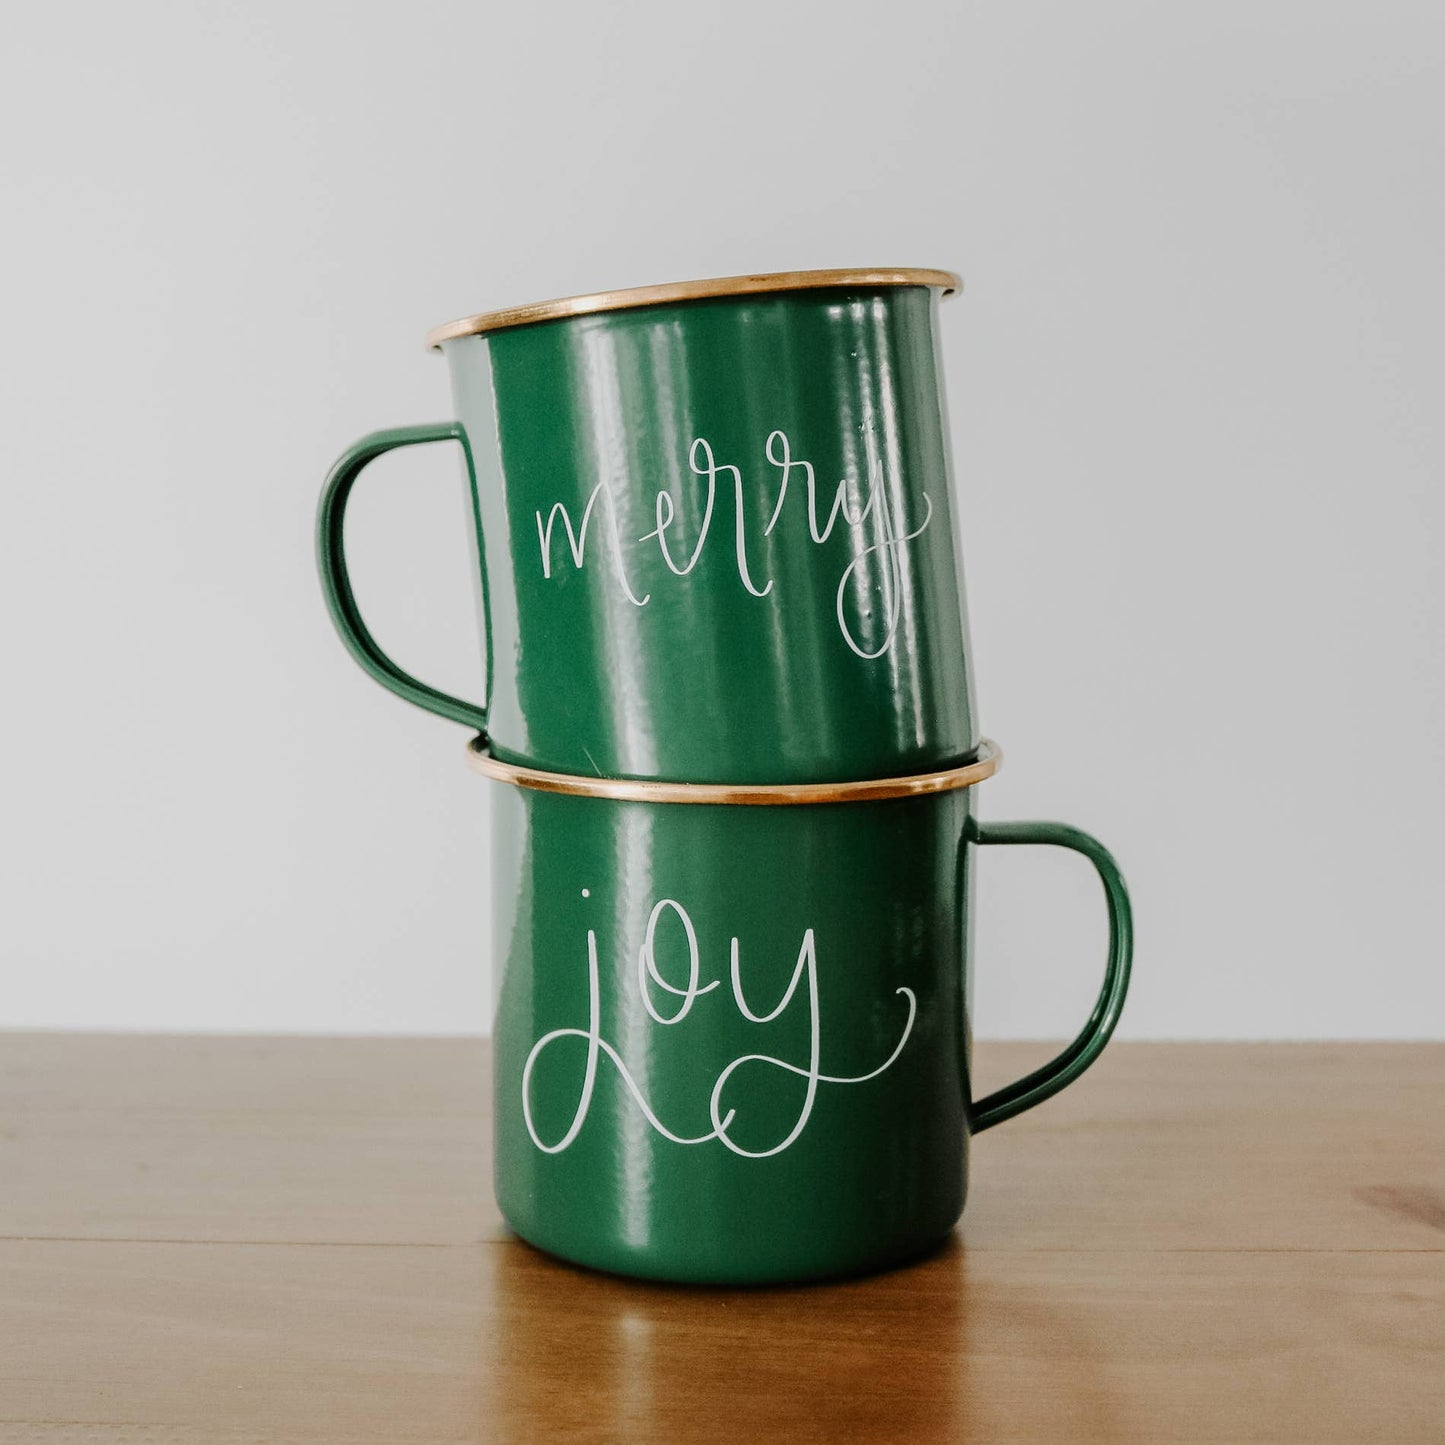 Joy Coffee Mug | Christmas Green